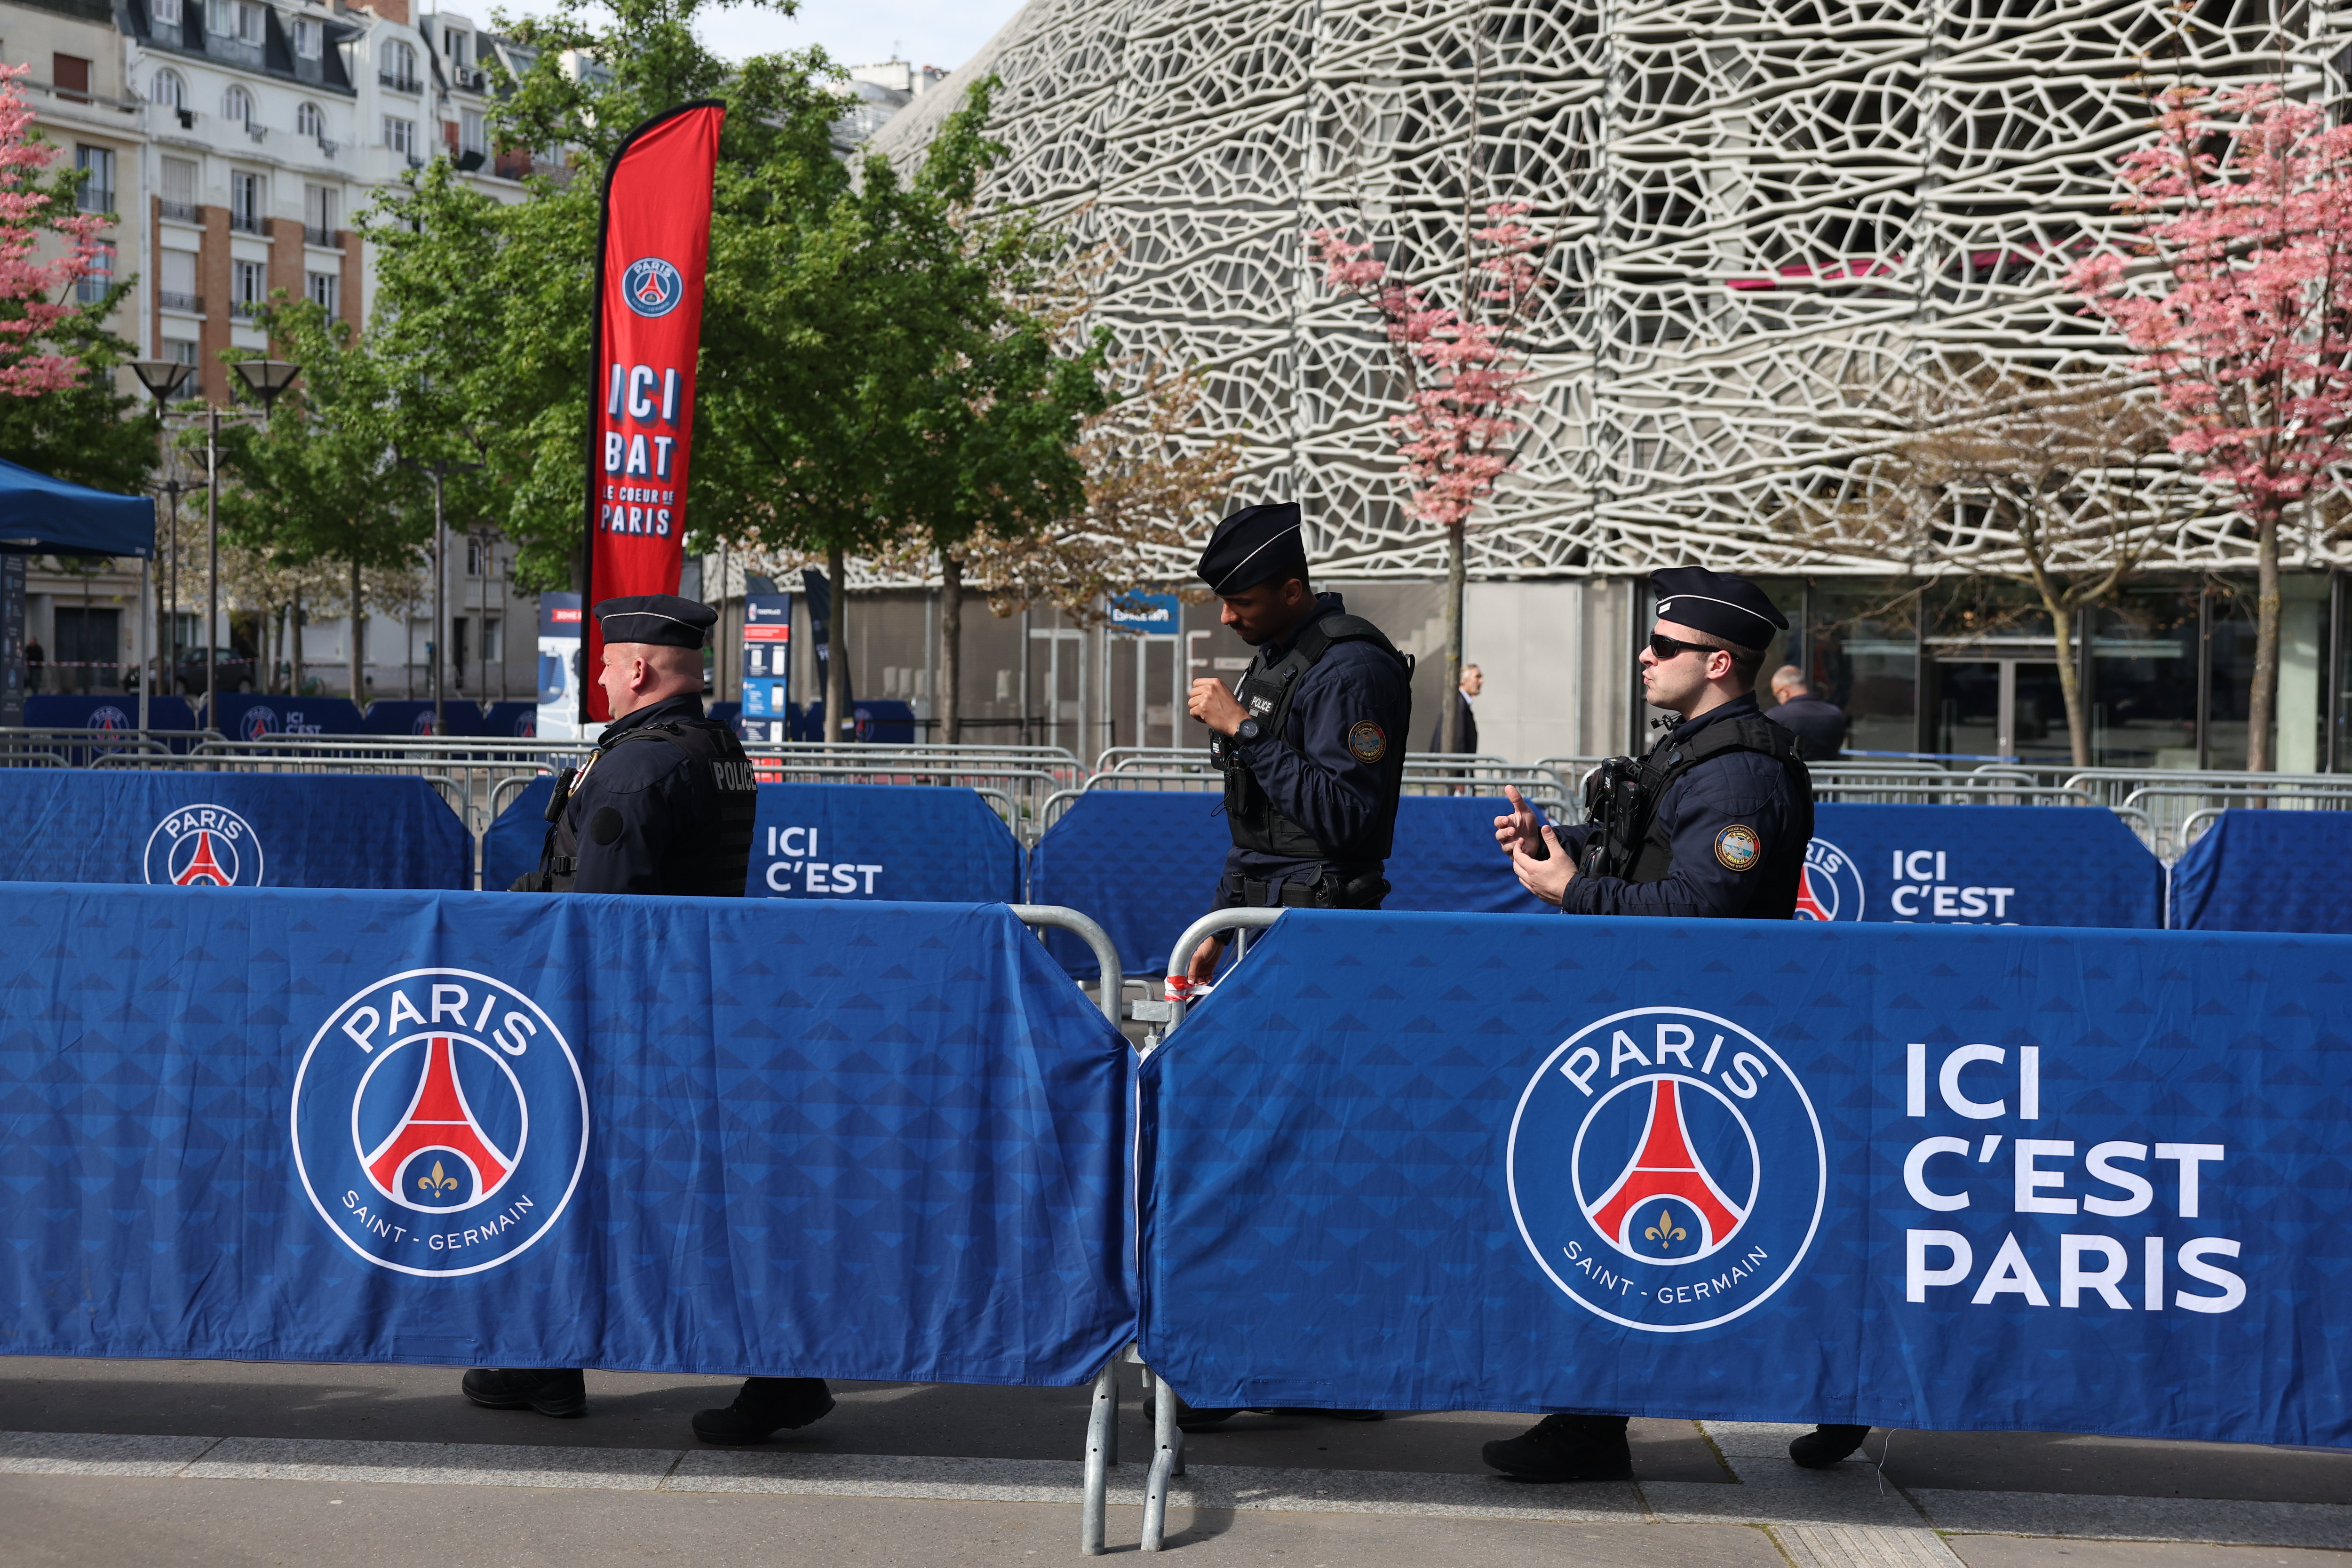 La sécurité a été considérablement renforcée autour du Parc des Princes en raison de la menace d'attaque terroriste. LP/Arnaud Journois